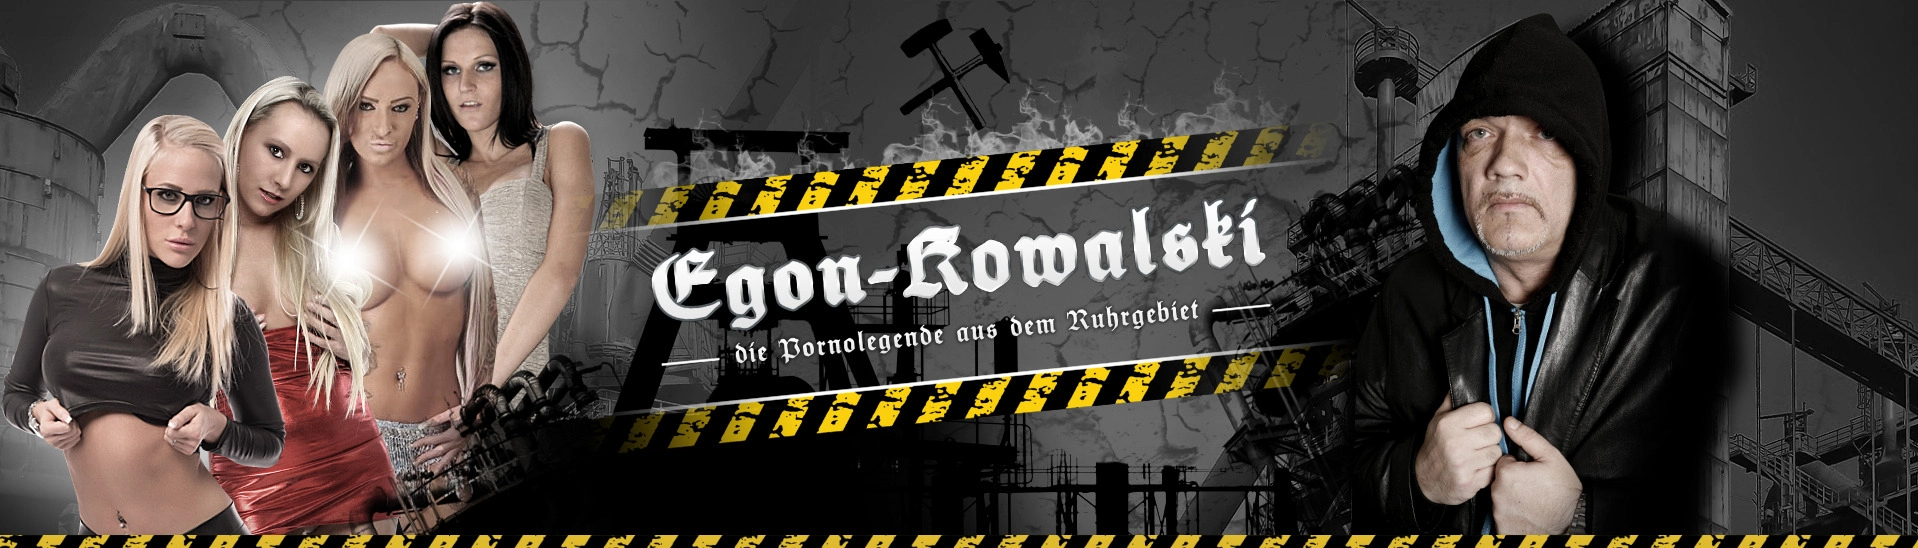 Egon Kowalski die Pornolegende aus dem Ruhrgebiet